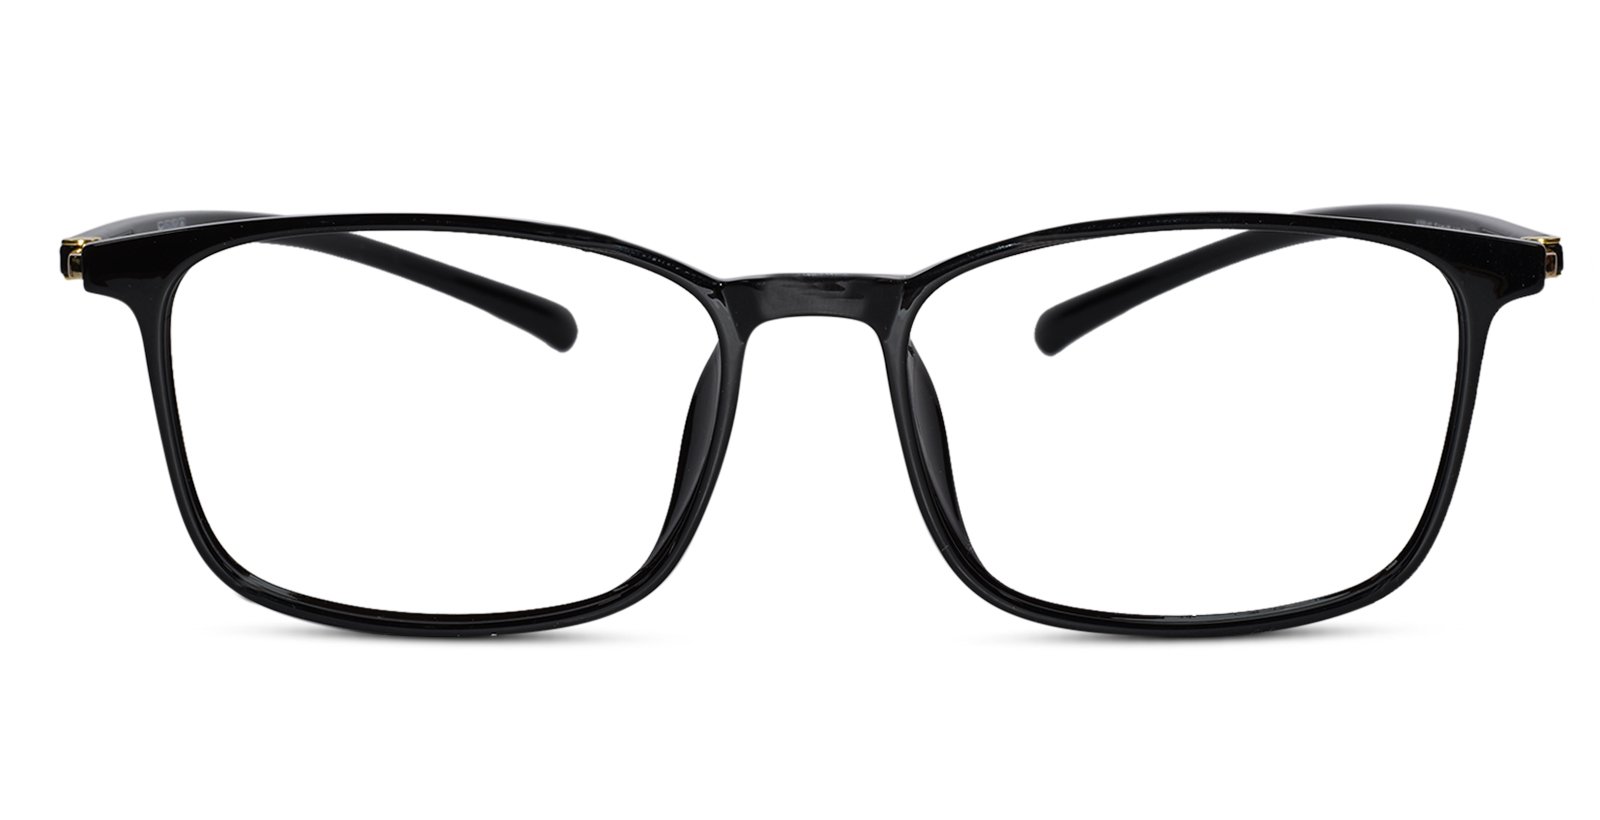 Glossy Black Full Rim Rectangular Eyeglasses